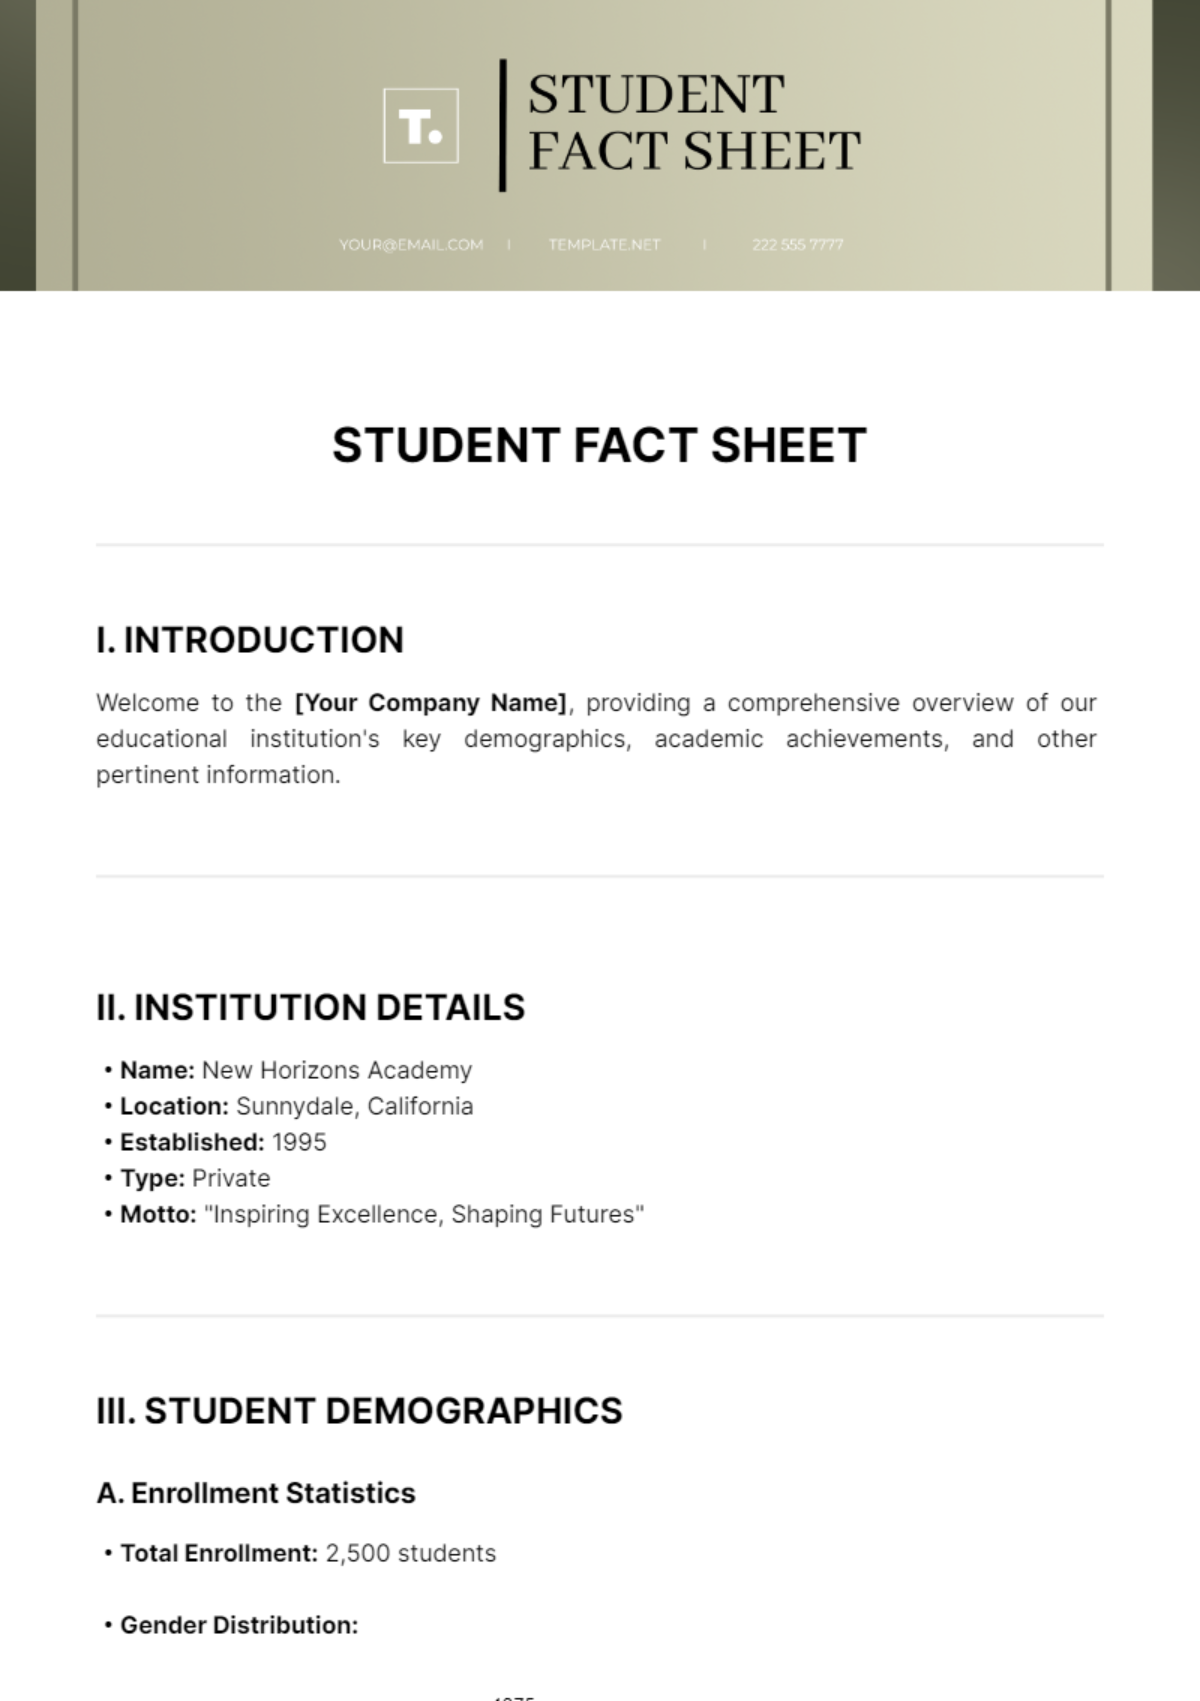 Student Fact Sheet Template